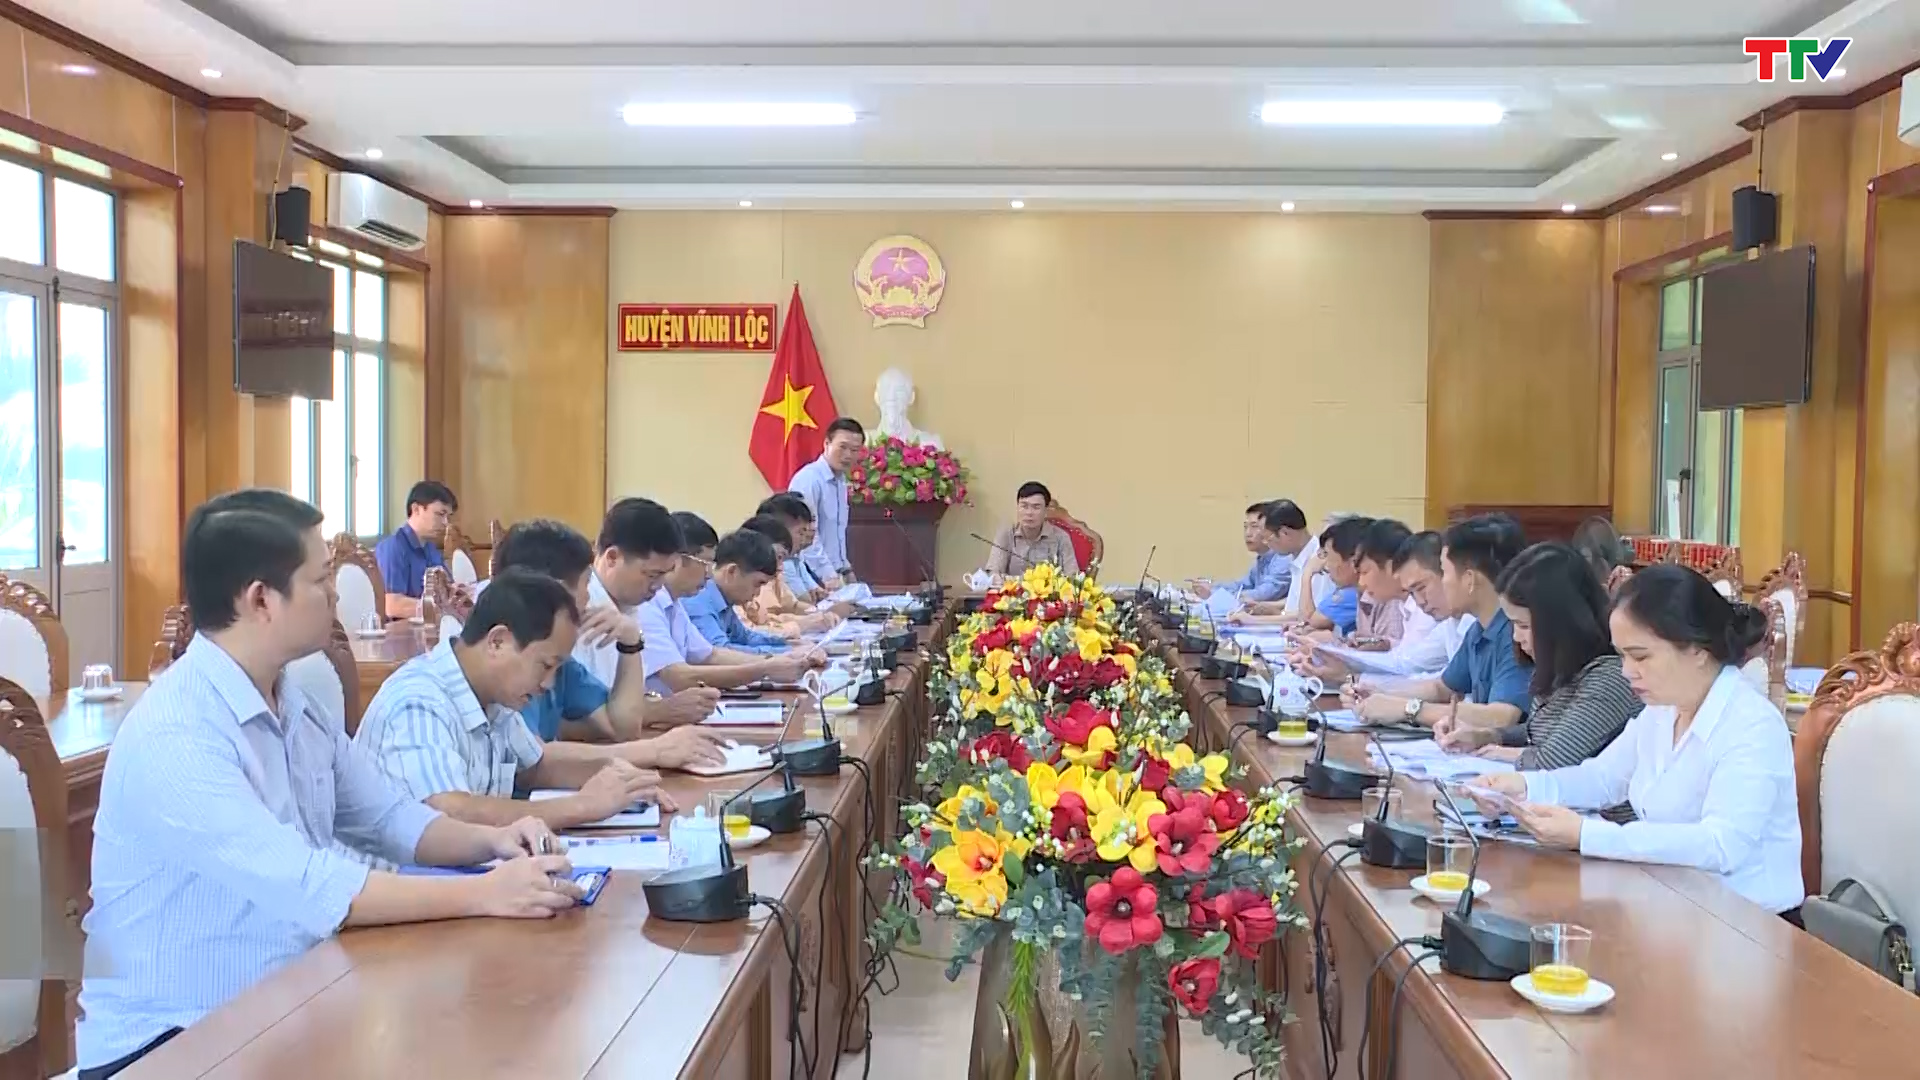 Huyện Vĩnh Lộc cần phát huy vai trò chính quyền cơ sở đảm bảo trật tự an toàn giao thông - Ảnh 2.